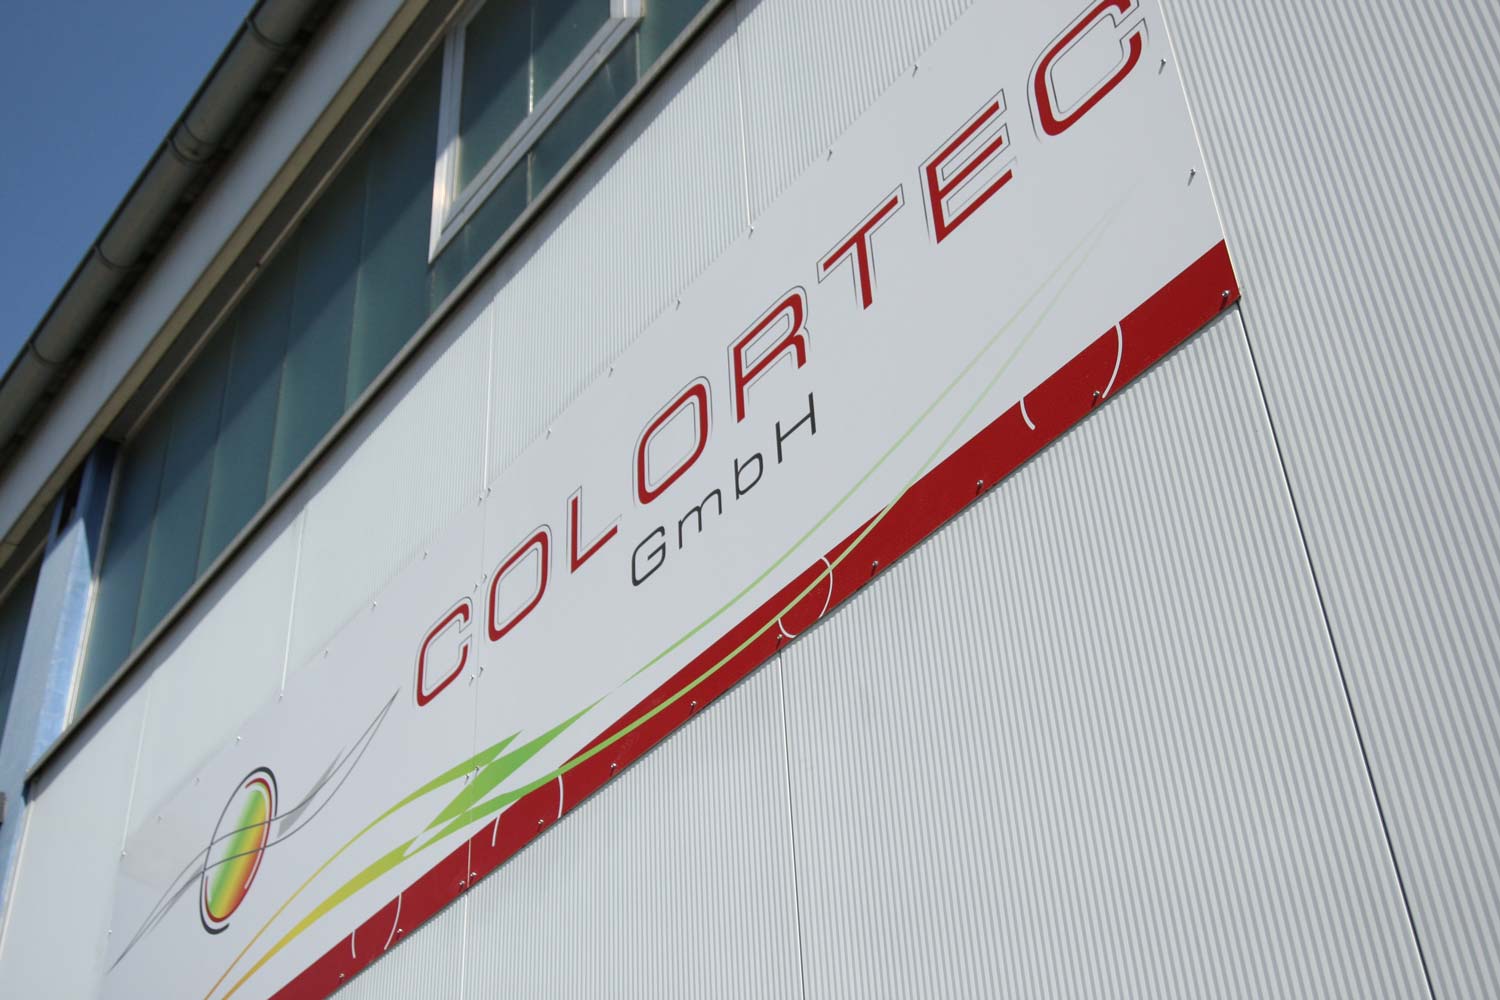 Colortec GmbH Company building